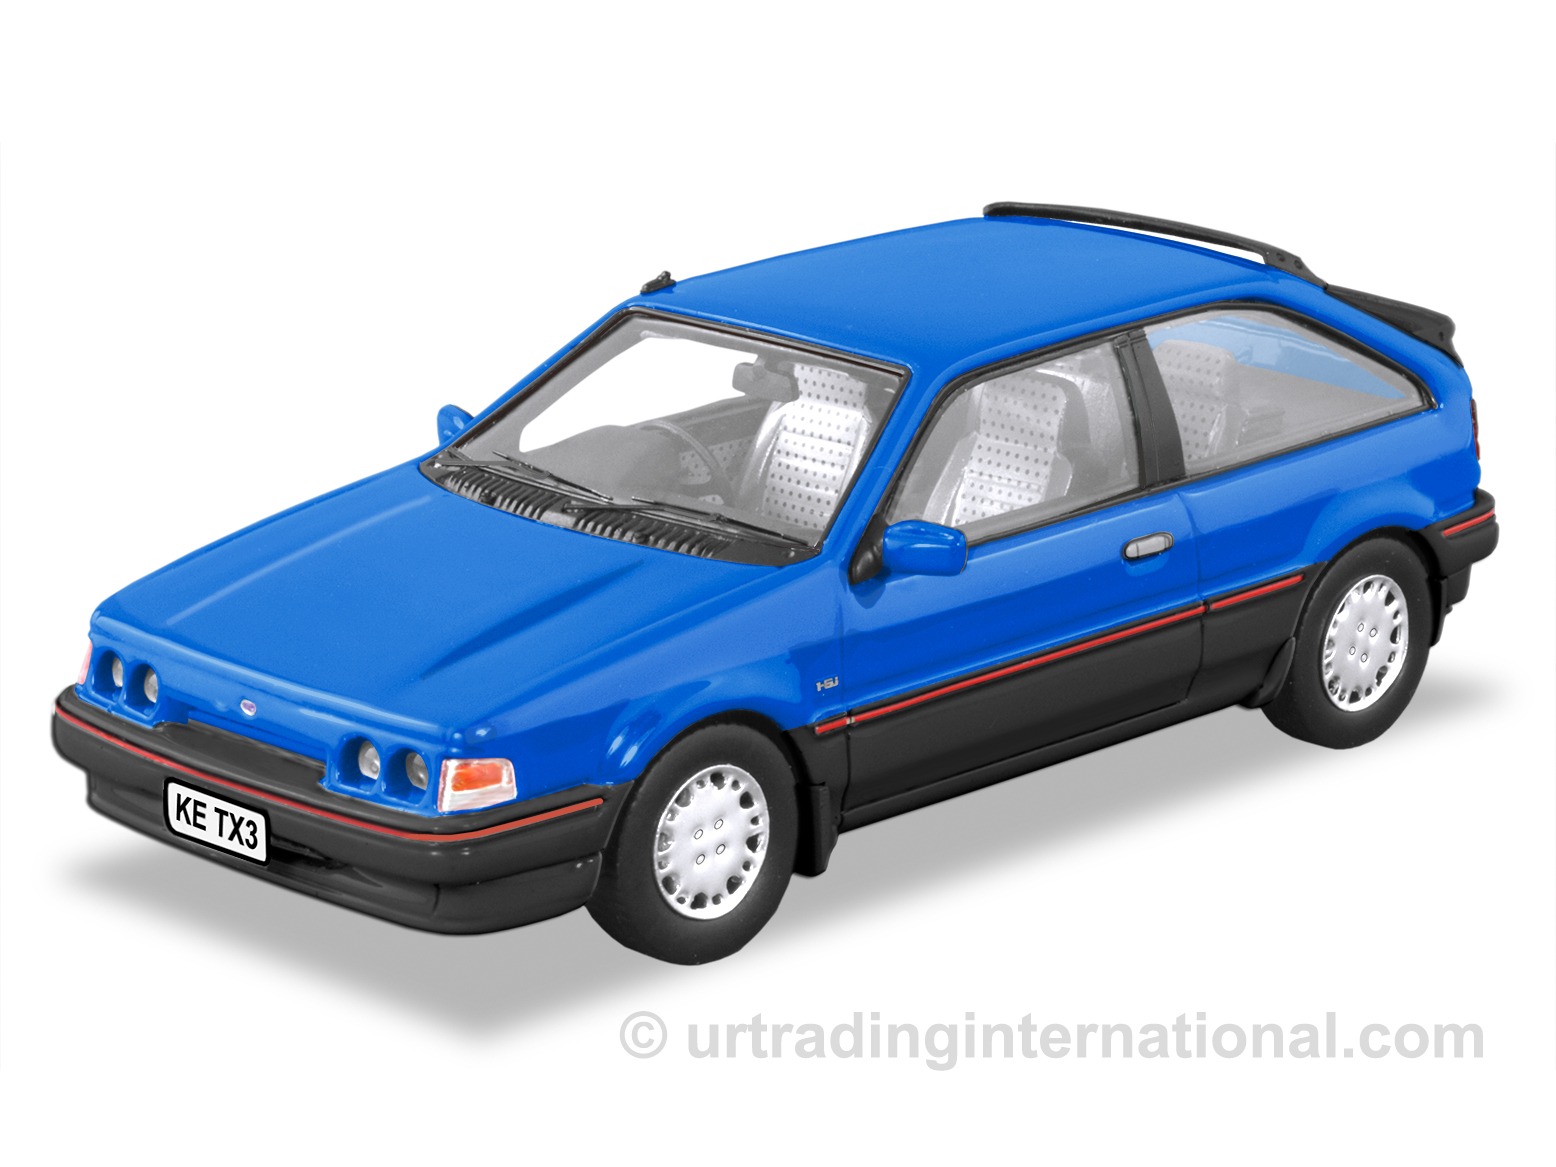 1988 KE Ford Laser TX3 – Cobalt Blue